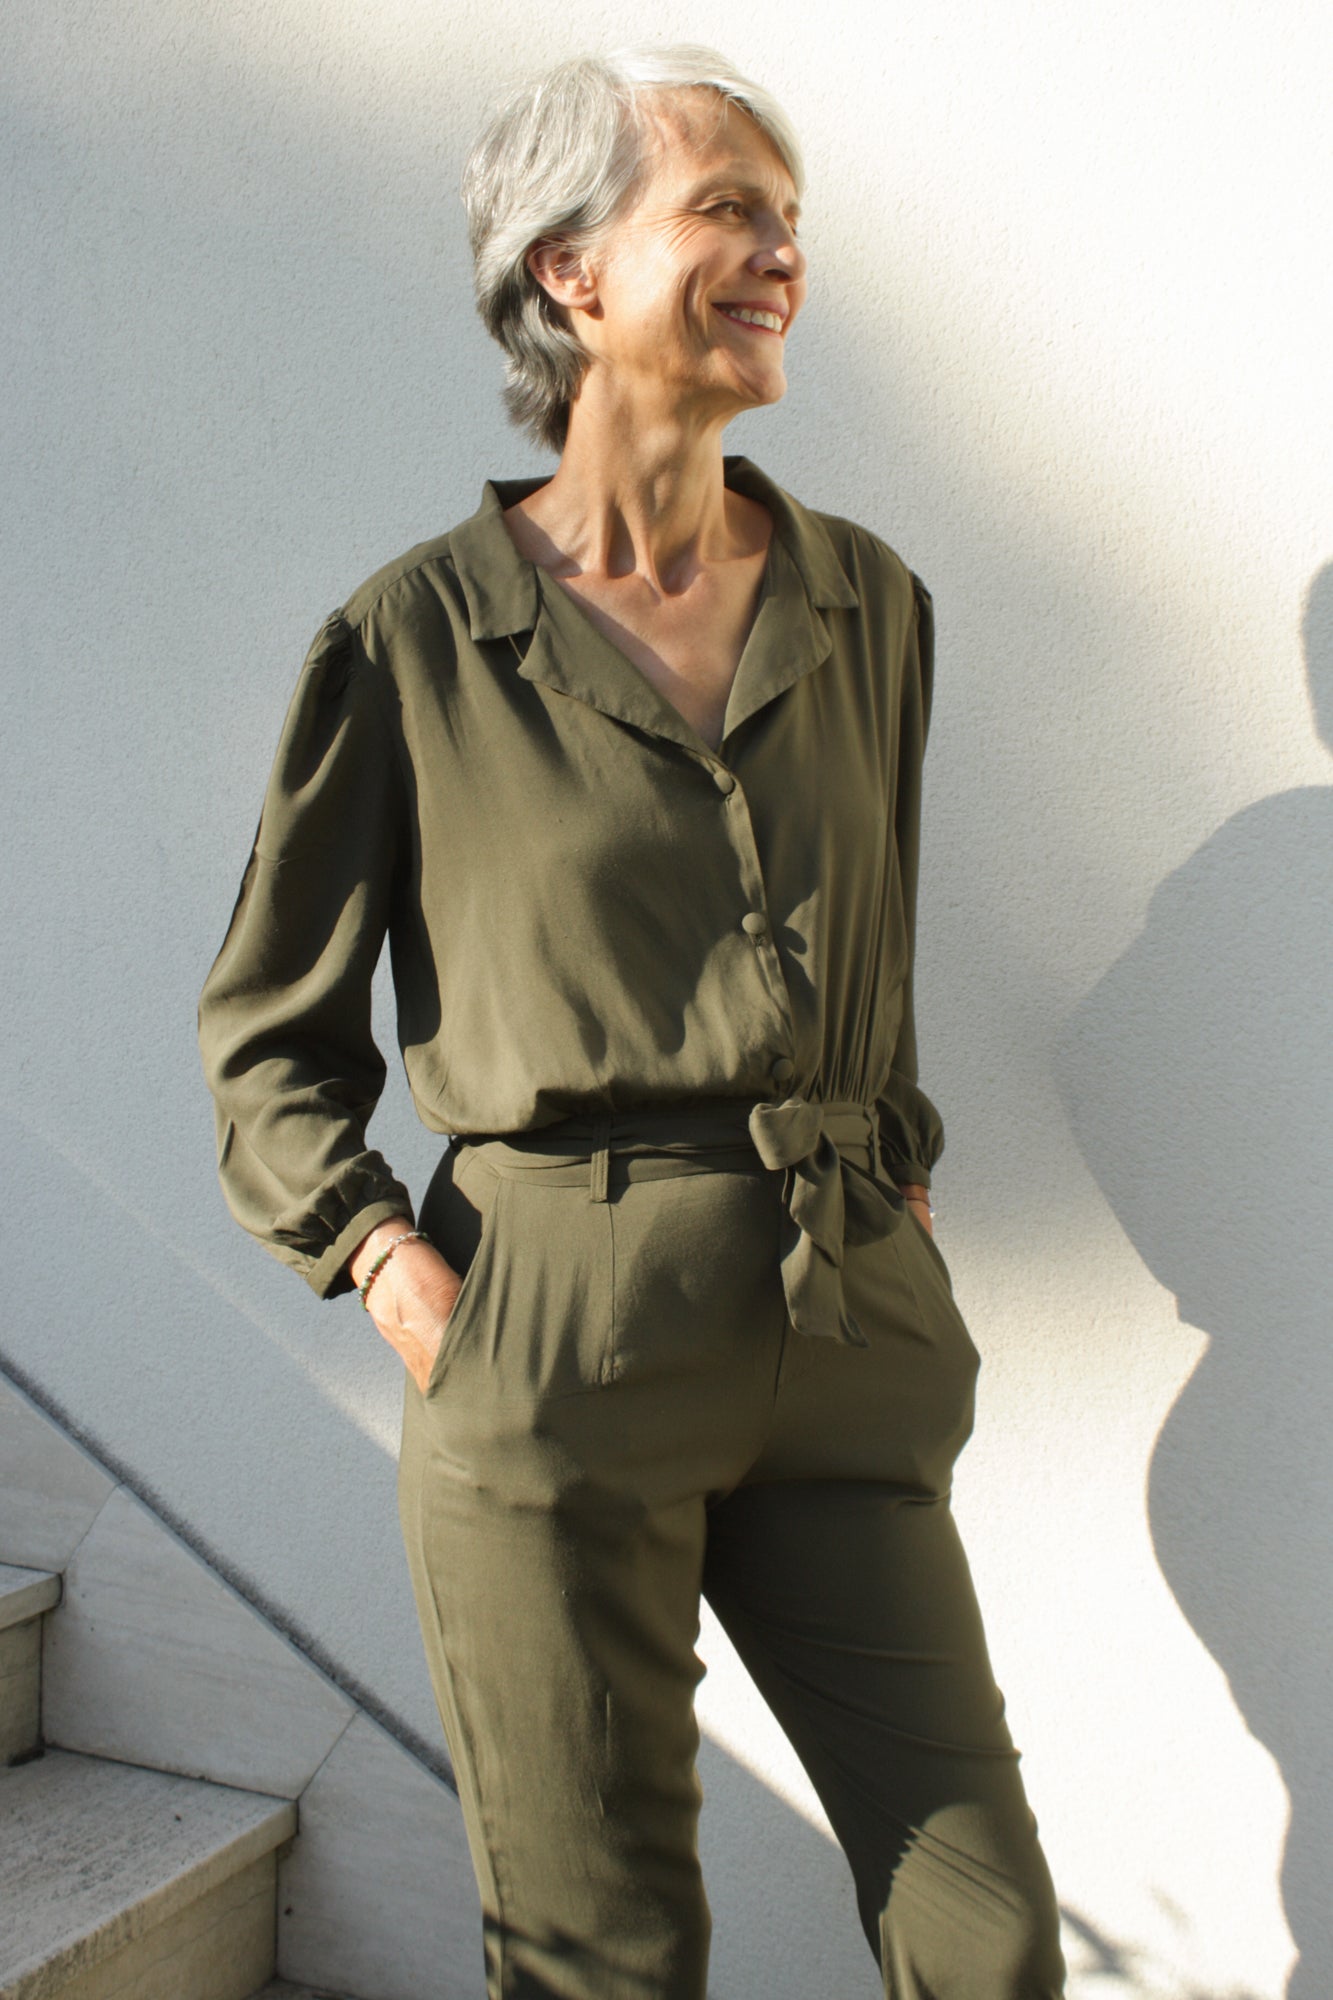 Femme mûre portant une combinaison vert kaki, avec une ceinture en tissu à la taille. La combinaison est en viscose, sous la forme d'un tissu léger et fluide. Elle comporte un col raille élégant ainsi que des manches longues 3/4.